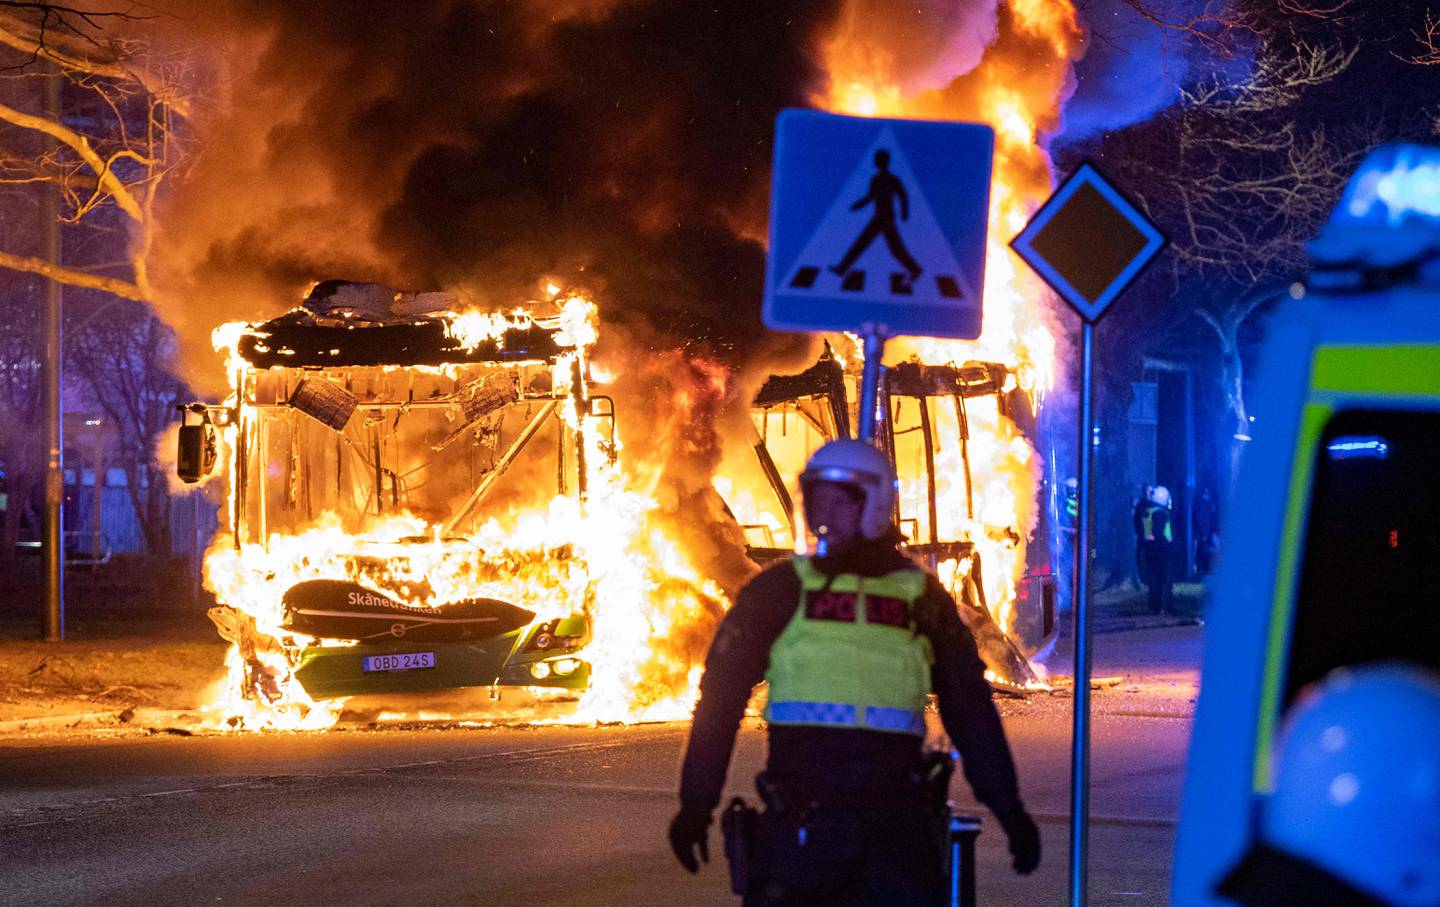 Det brøt ut voldsomme opptøyer i Sverige Sverige da den høyreradikale politikeren Rasmus Paludan brente koranen i flere byer. Her fra Malmø påskeaften.